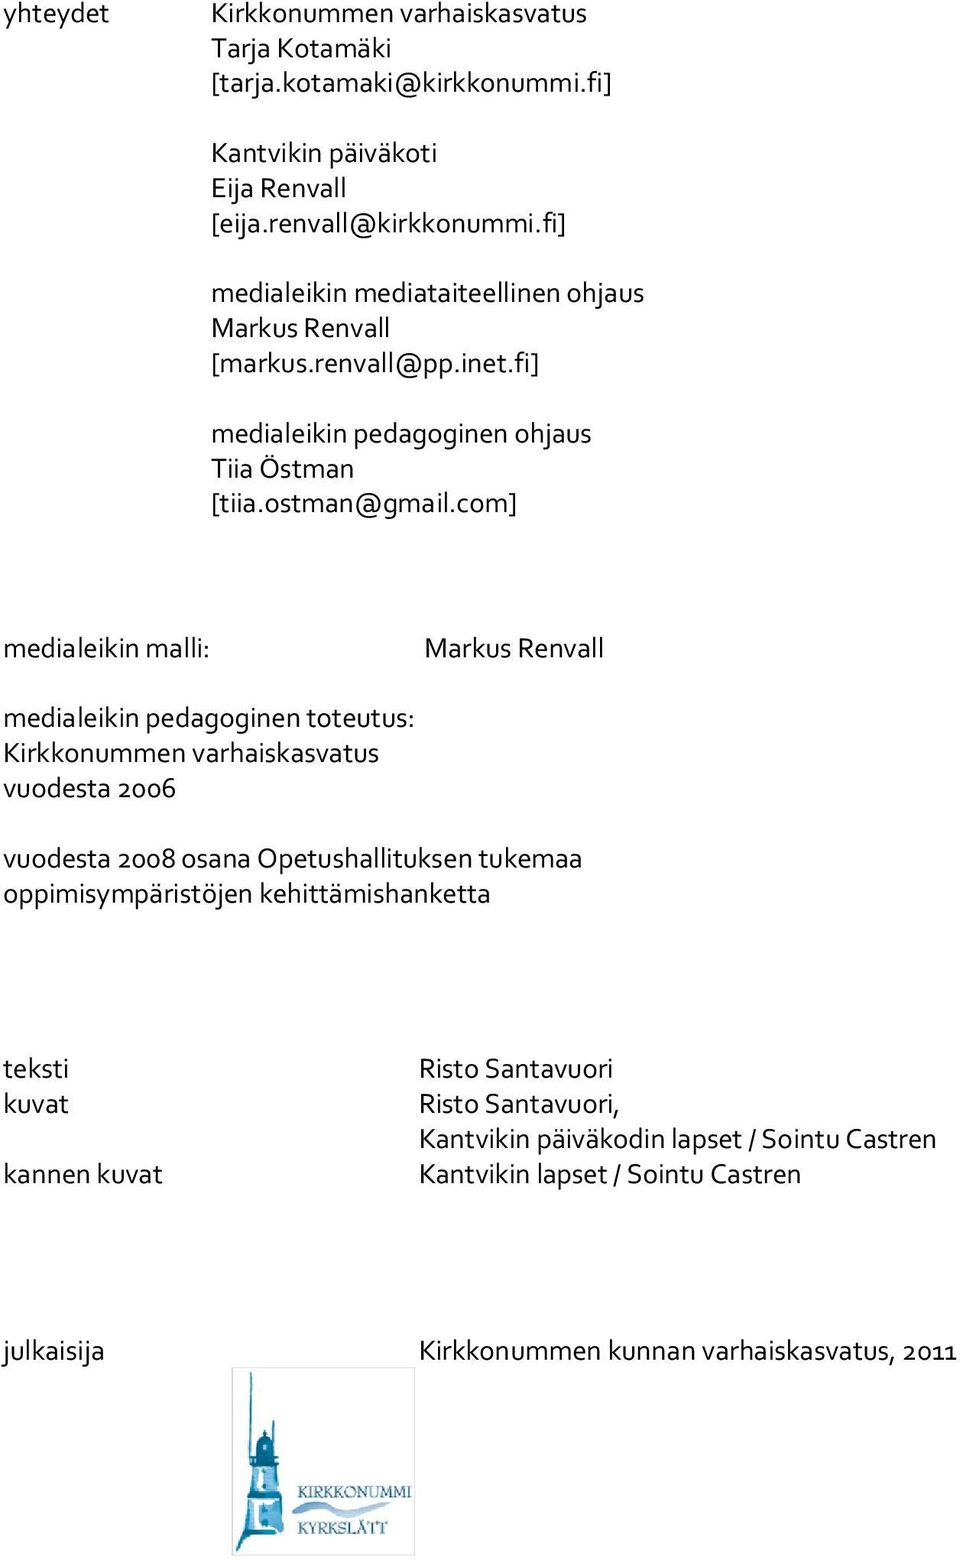 com] medialeikin malli: Markus Renvall medialeikin pedagoginen toteutus: Kirkkonummen varhaiskasvatus vuodesta 2006 vuodesta 2008 osana Opetushallituksen tukemaa